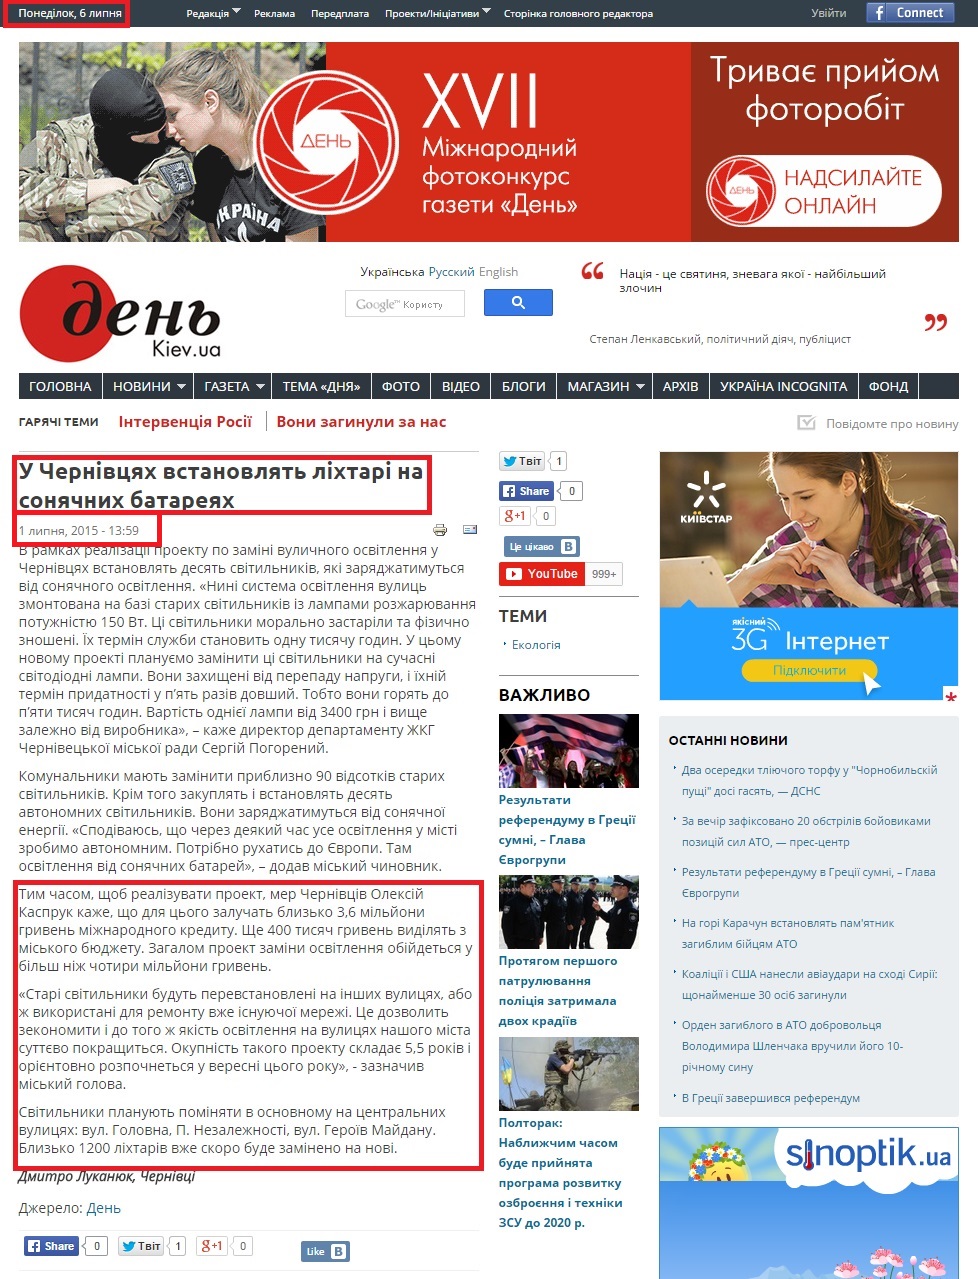 http://www.day.kiev.ua/uk/news/010715-u-chernivcyah-vstanovlyat-lihtari-na-sonyachnyh-batareyah